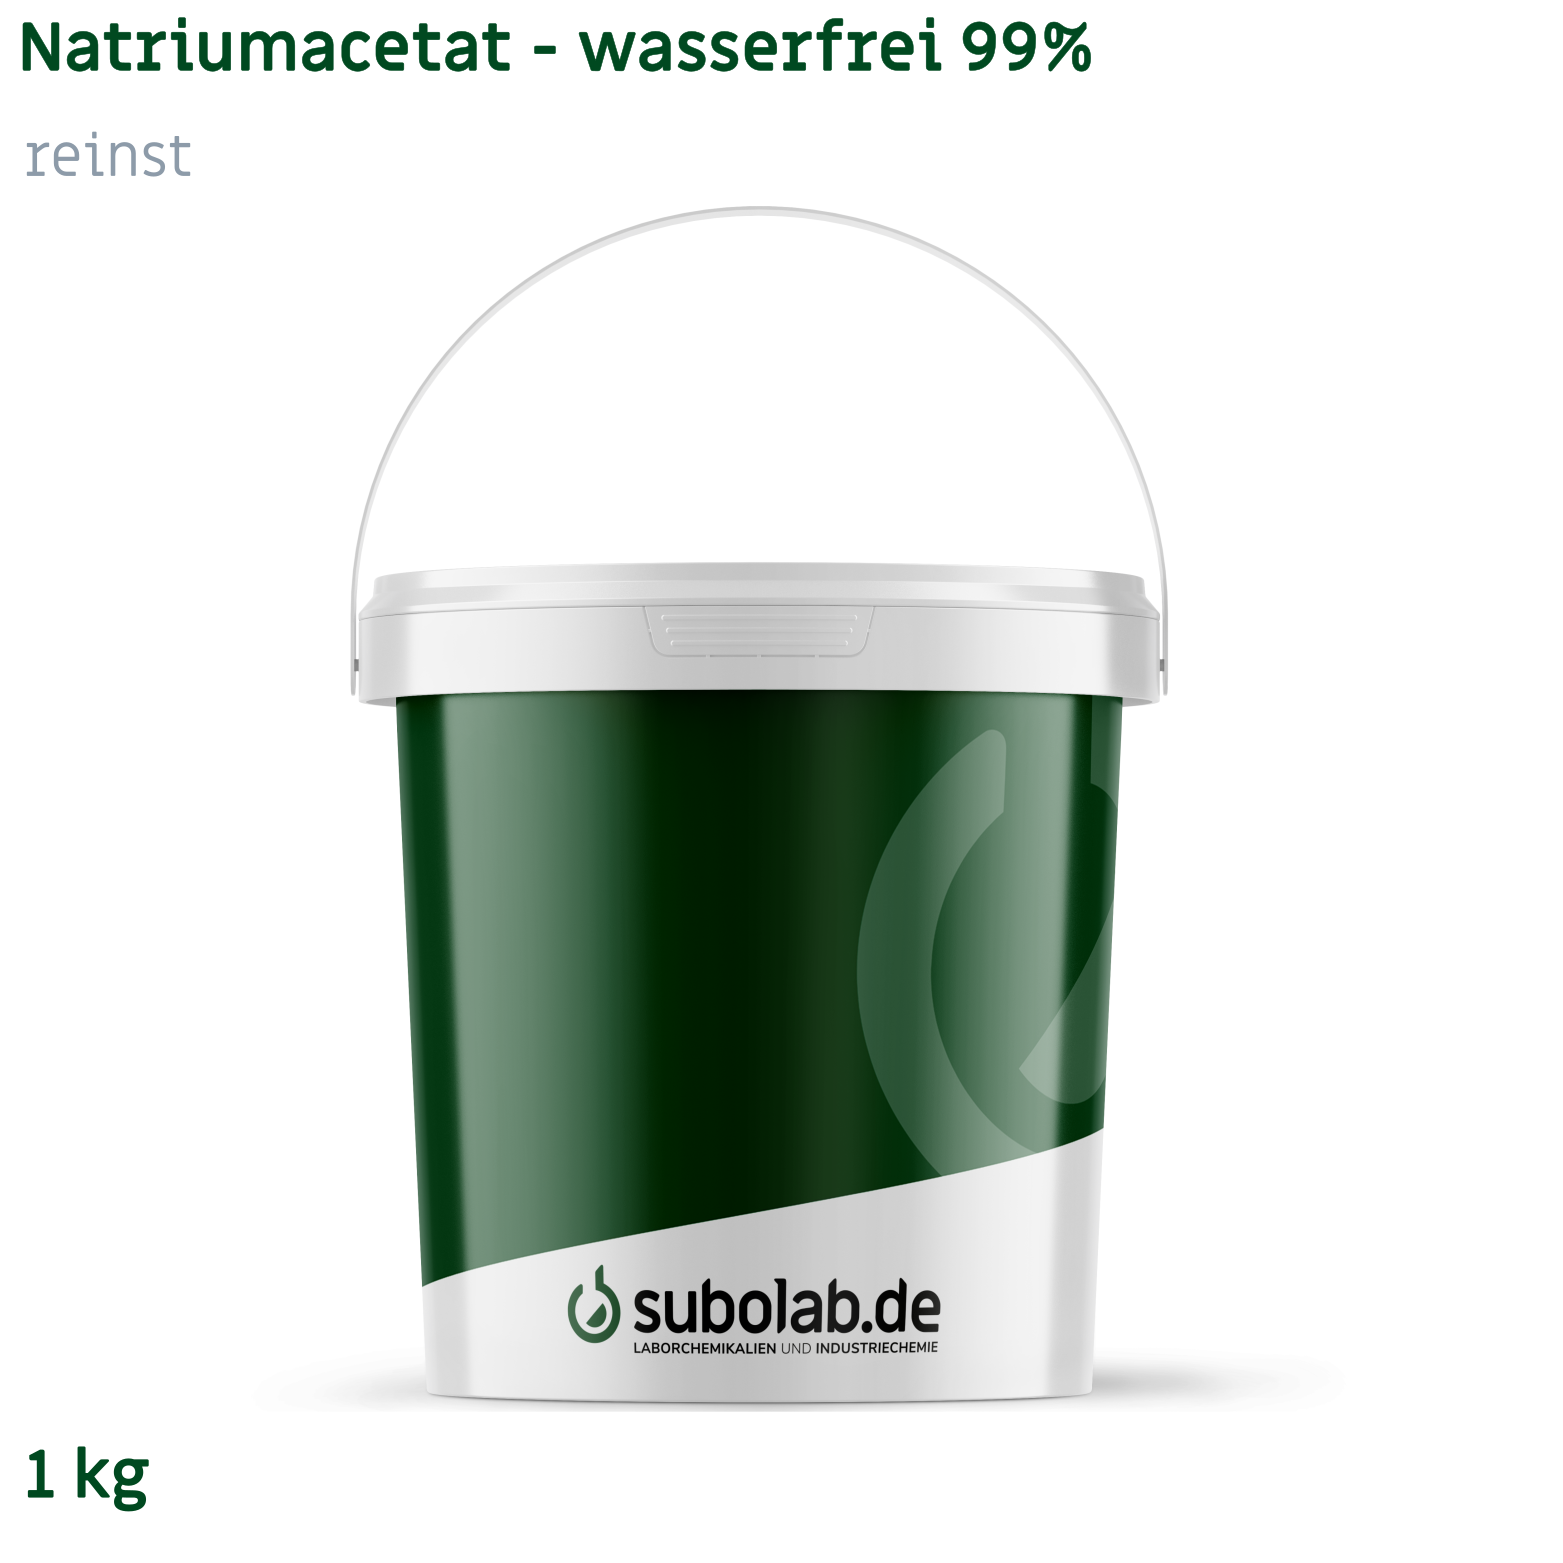 Bild von Natriumacetat - wasserfrei 99% reinst (1 kg)